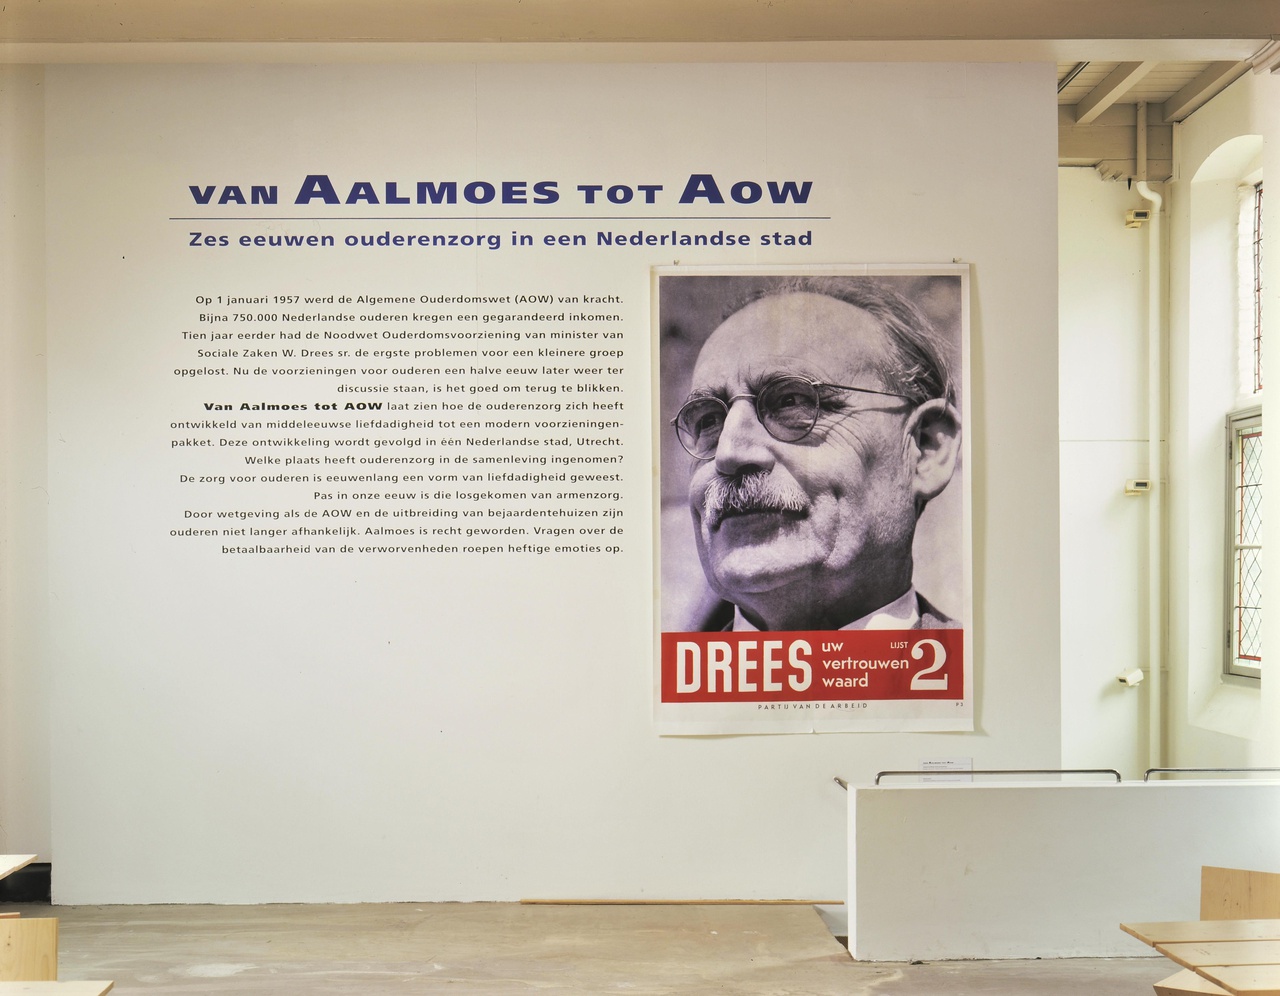 Van Aalmoes tot AOW, zes eeuwen ouderenzorg in een Nederlandse stad